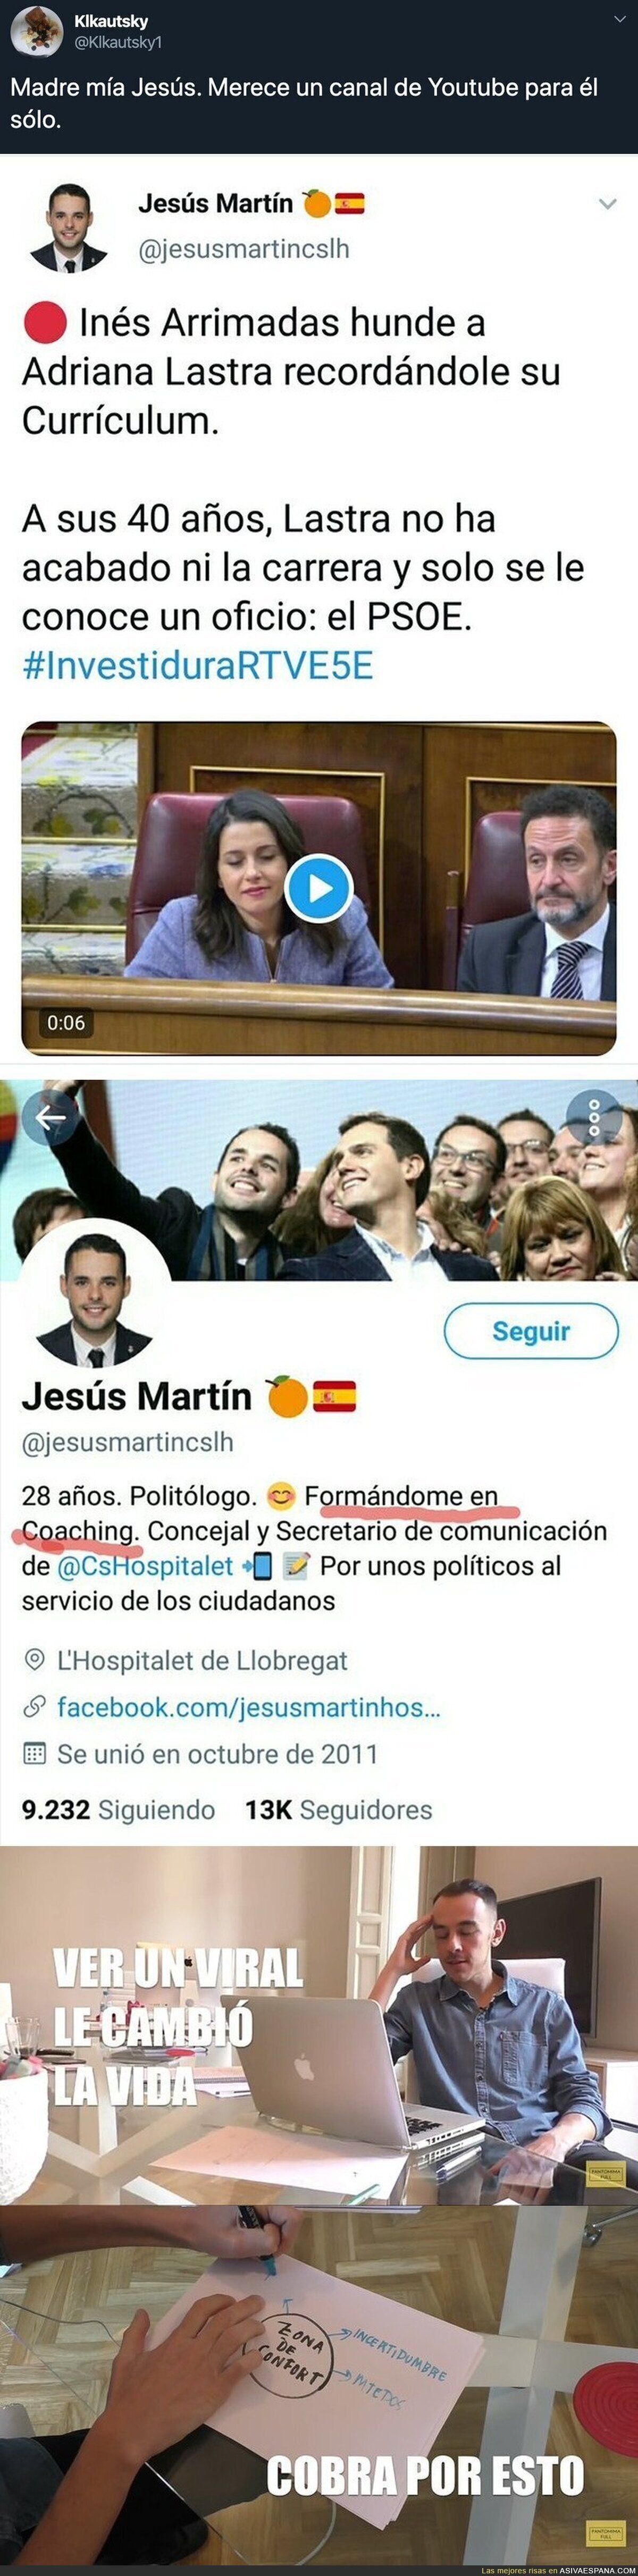 El gran futuro de Ciudadanos está en manos de Jesús Martín